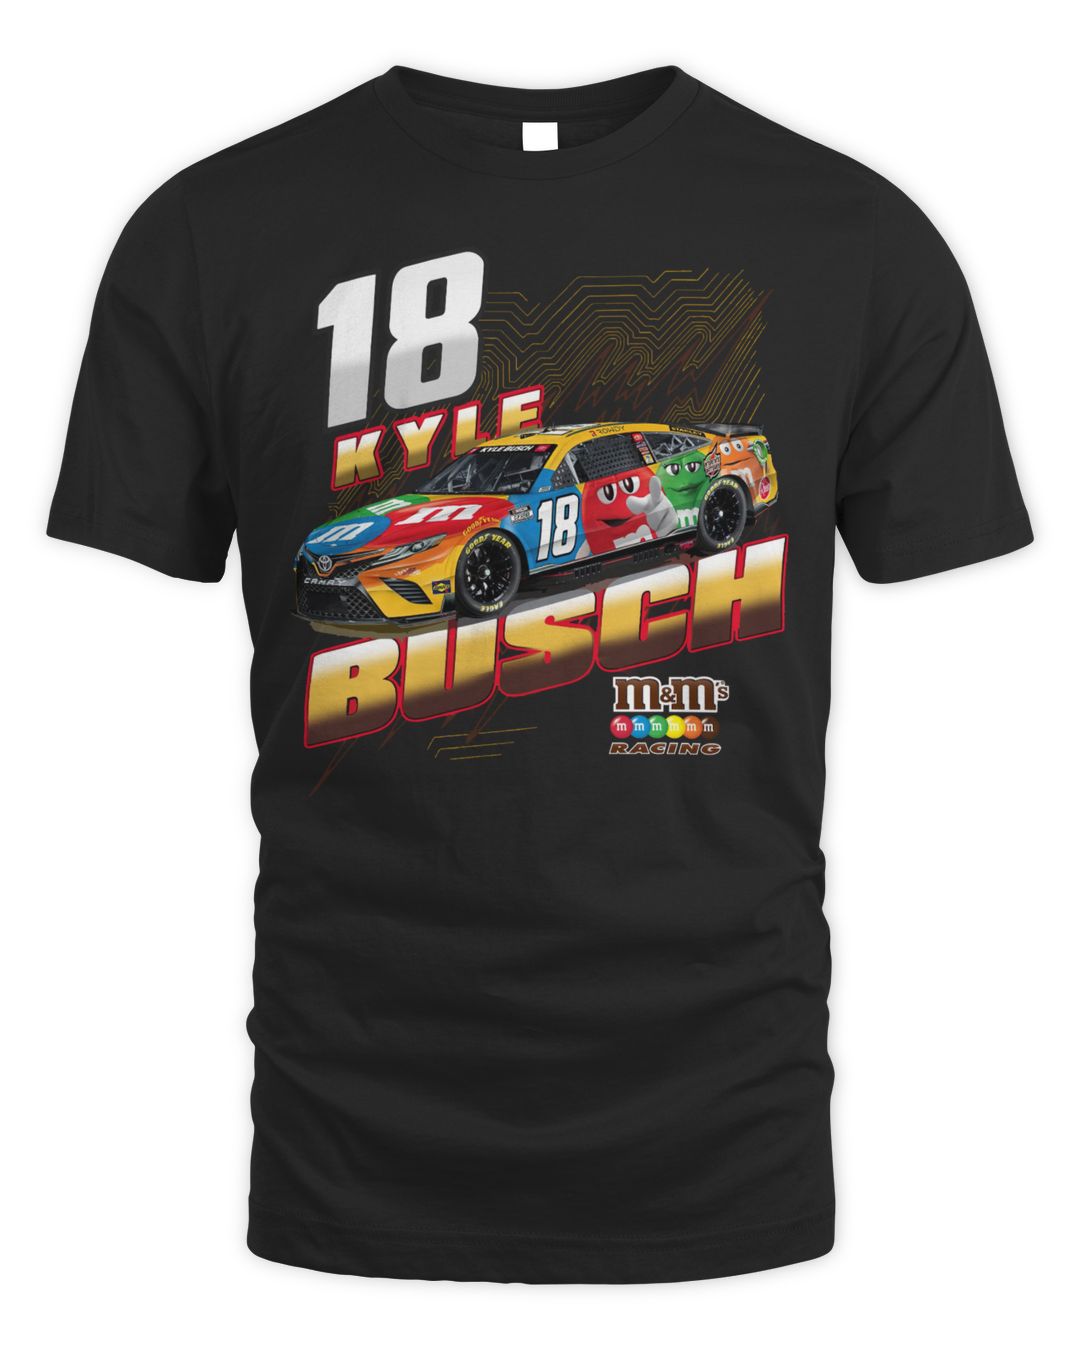 Kyle Busch Joe Gibbs Racing Team Collection M&M’s Groove Shirt